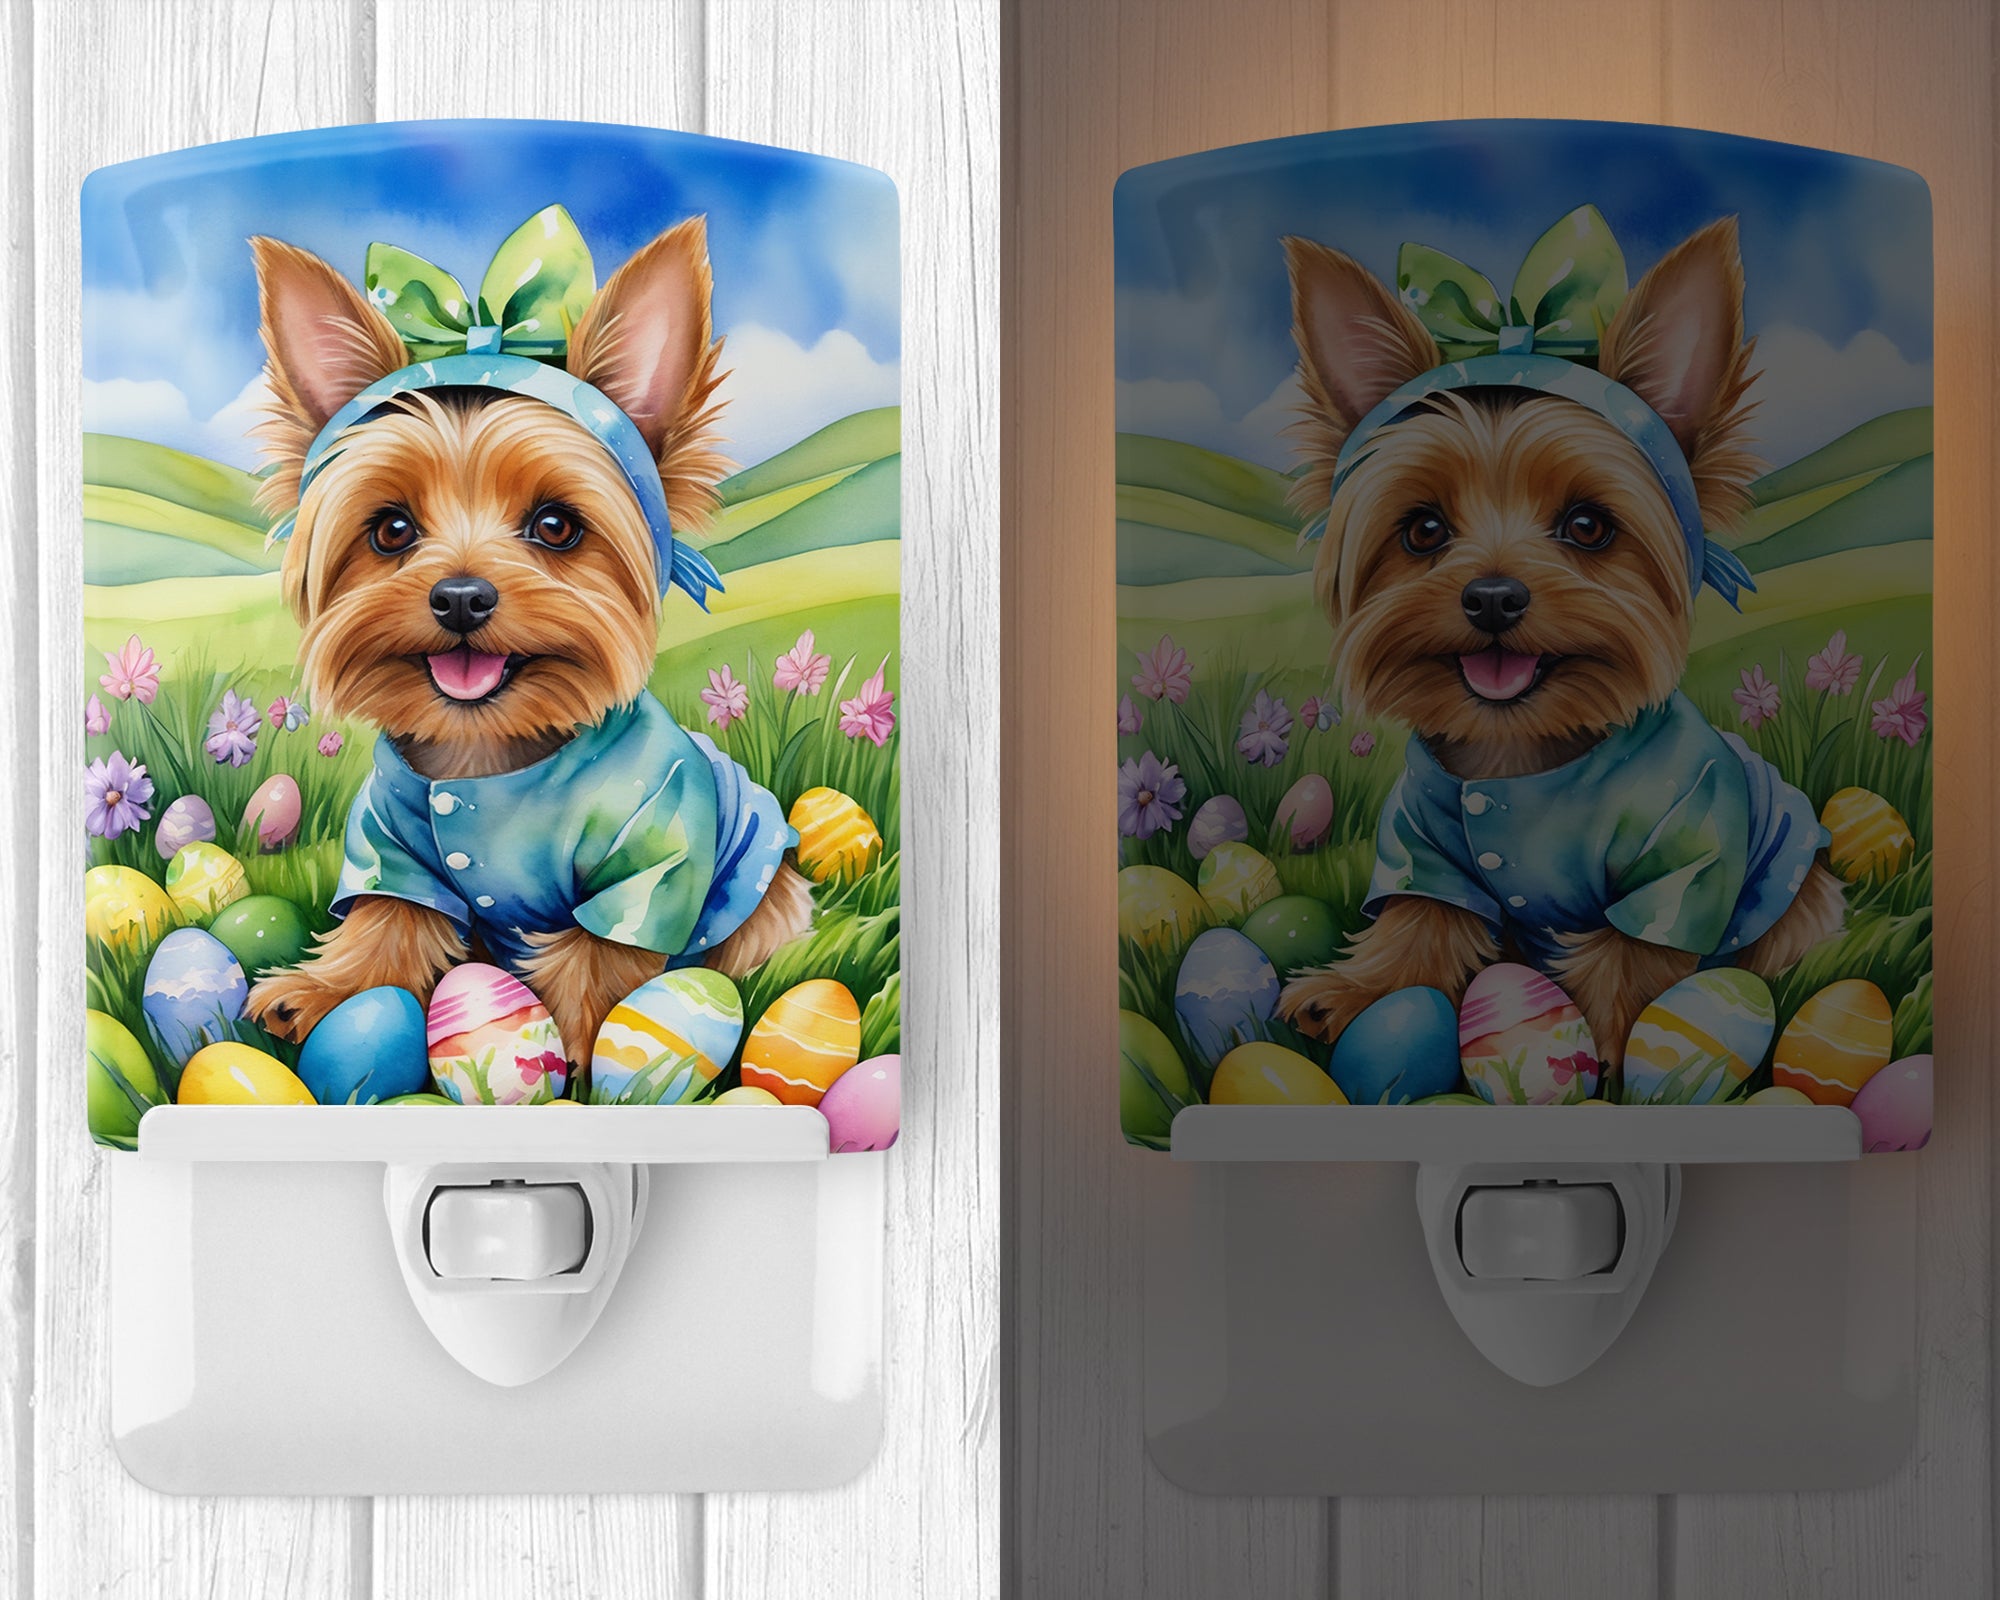 Buy this Silky Terrier Easter Egg Hunt Ceramic Night Light